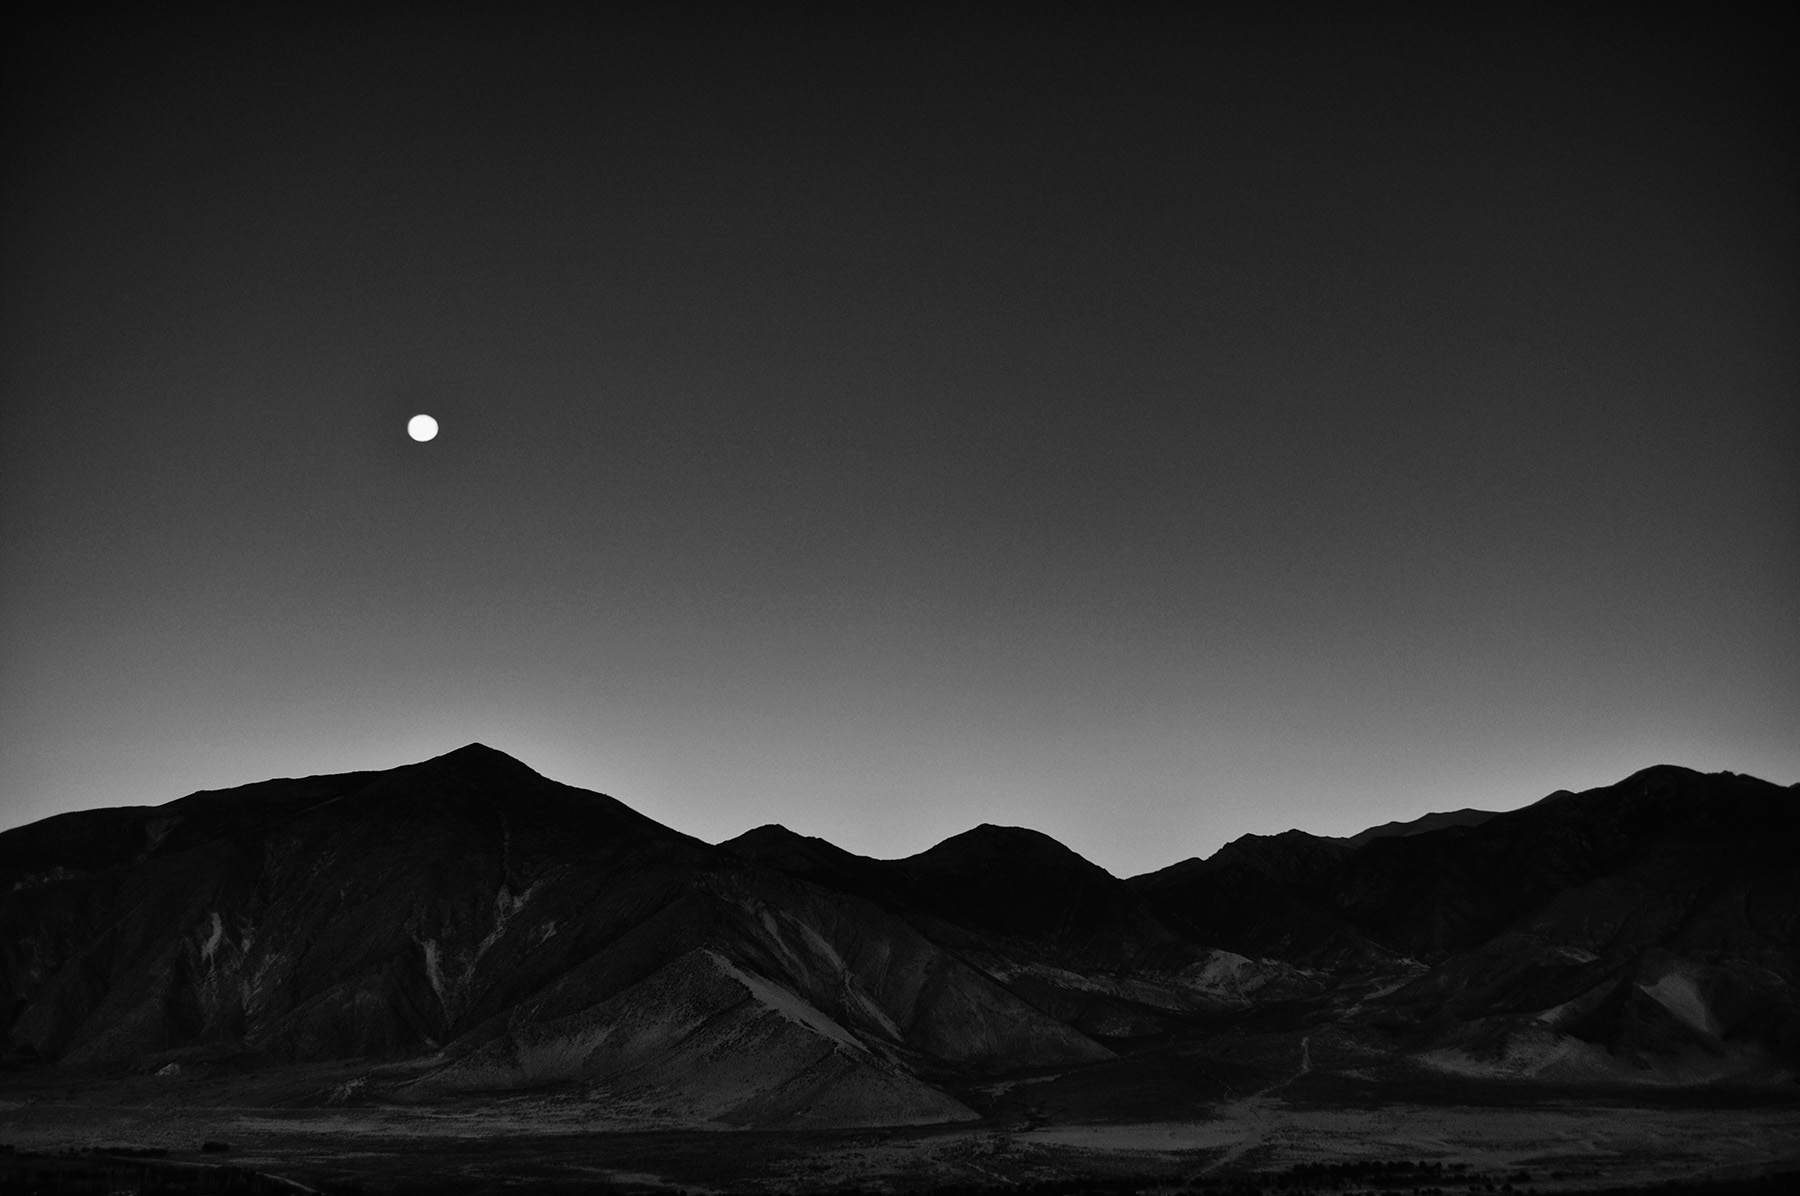 full-moon-over-samye-tibet.jpg